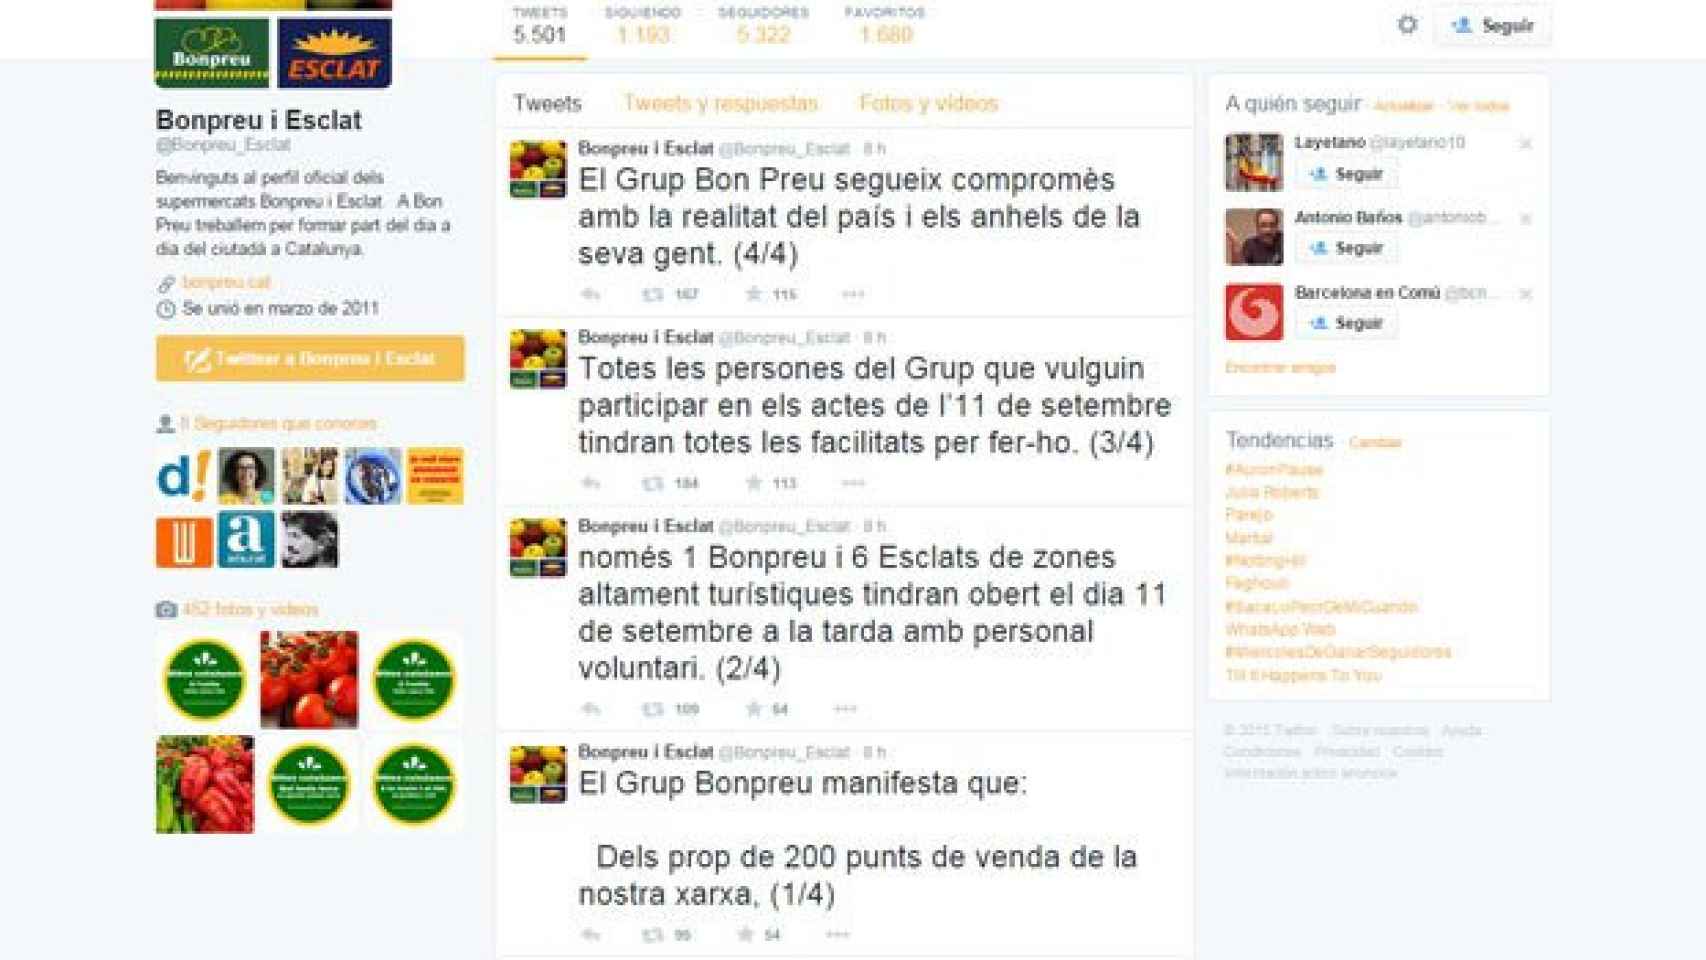 Tuits de Bon Preu animando a sus empleados a participar en los actos del 11S